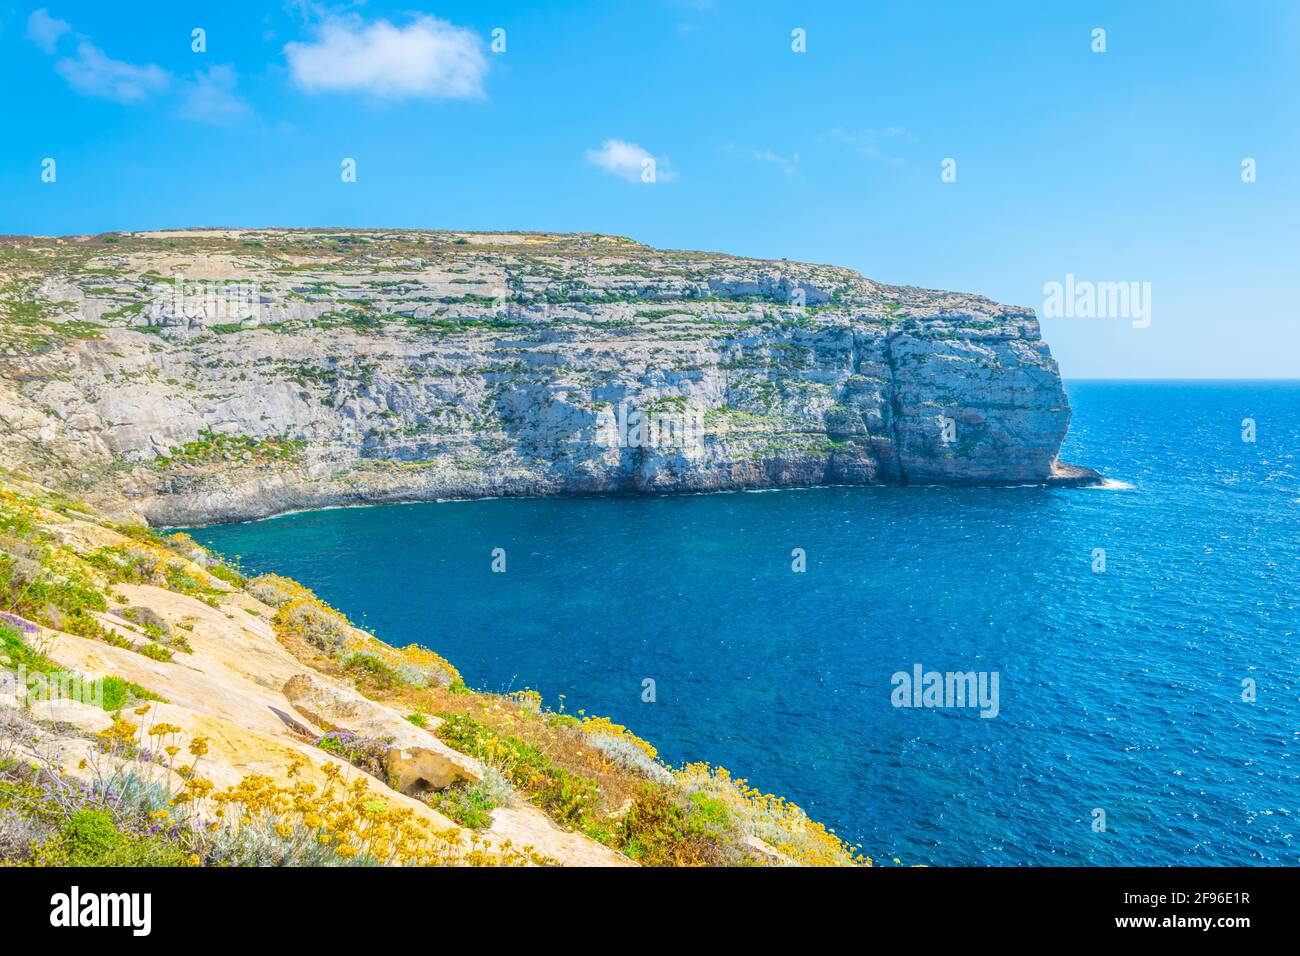 View of rugged seacoast near Dwejra point, Gozo, Malta Stock Photo